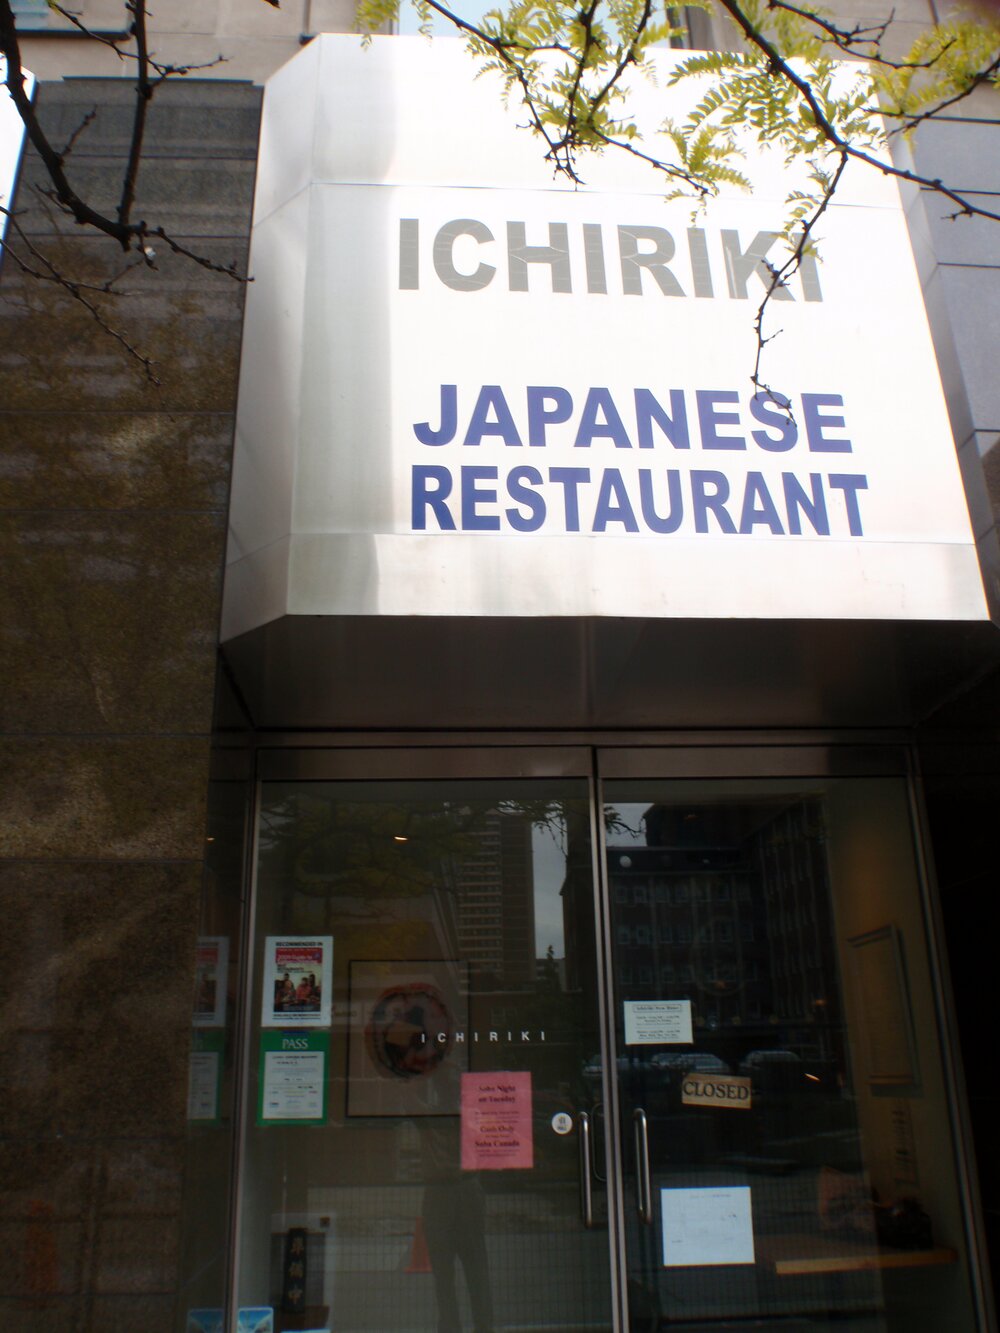 Ichiriki Restaurant at Bloor St